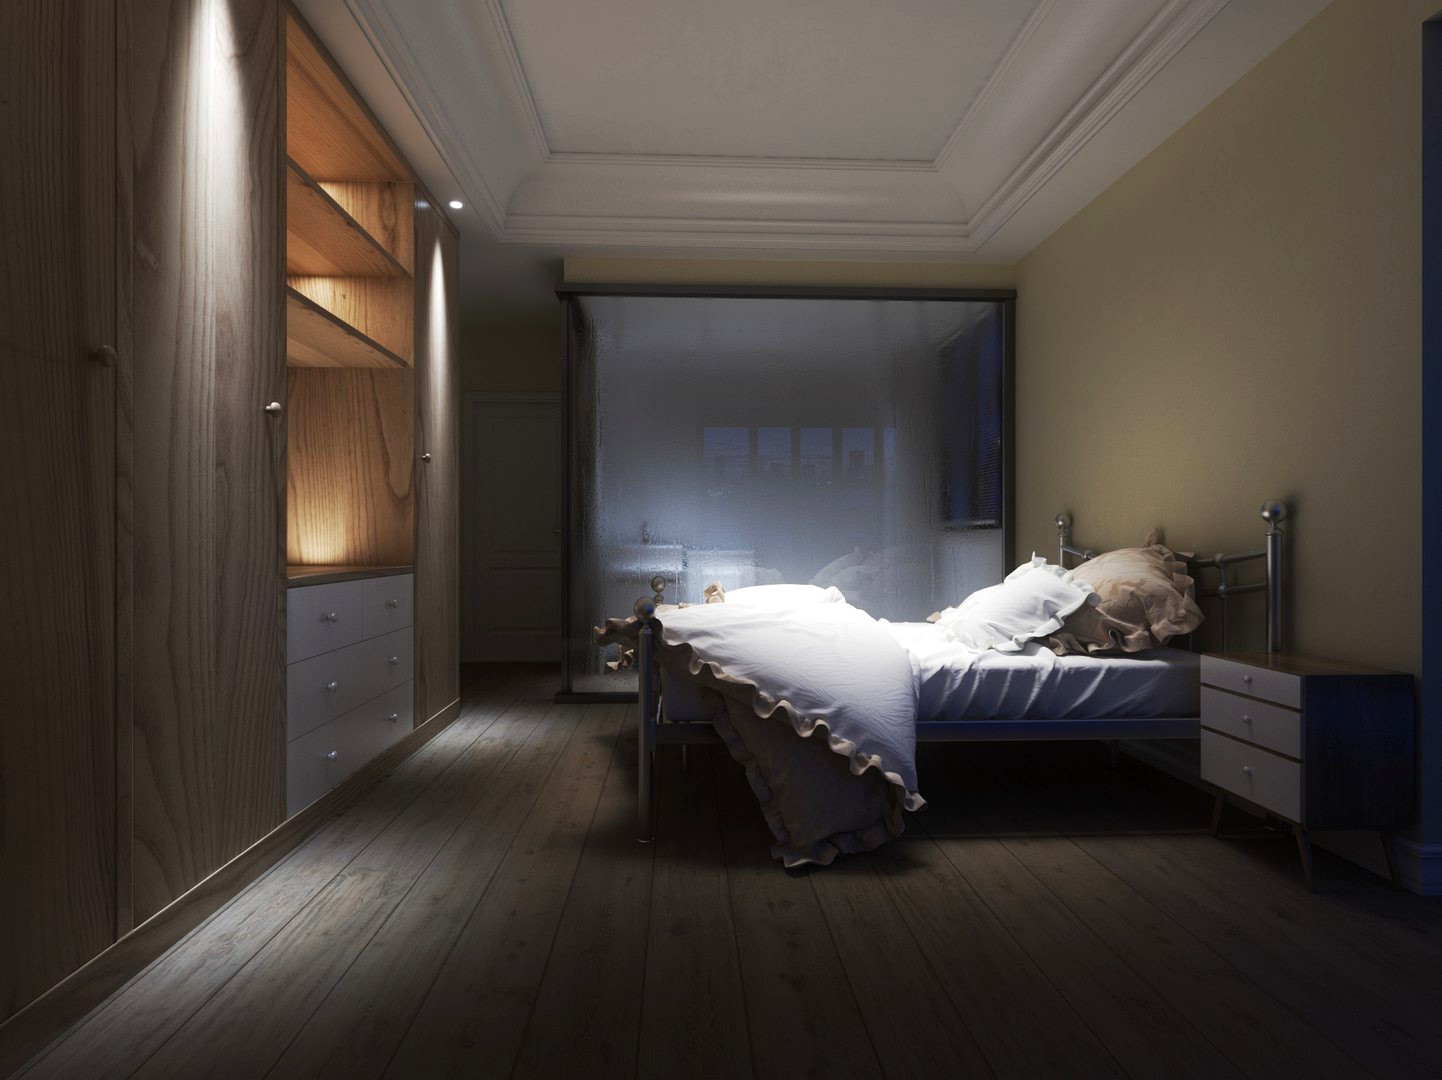 Chrome Framed Bed in Bedroom Interior Setting